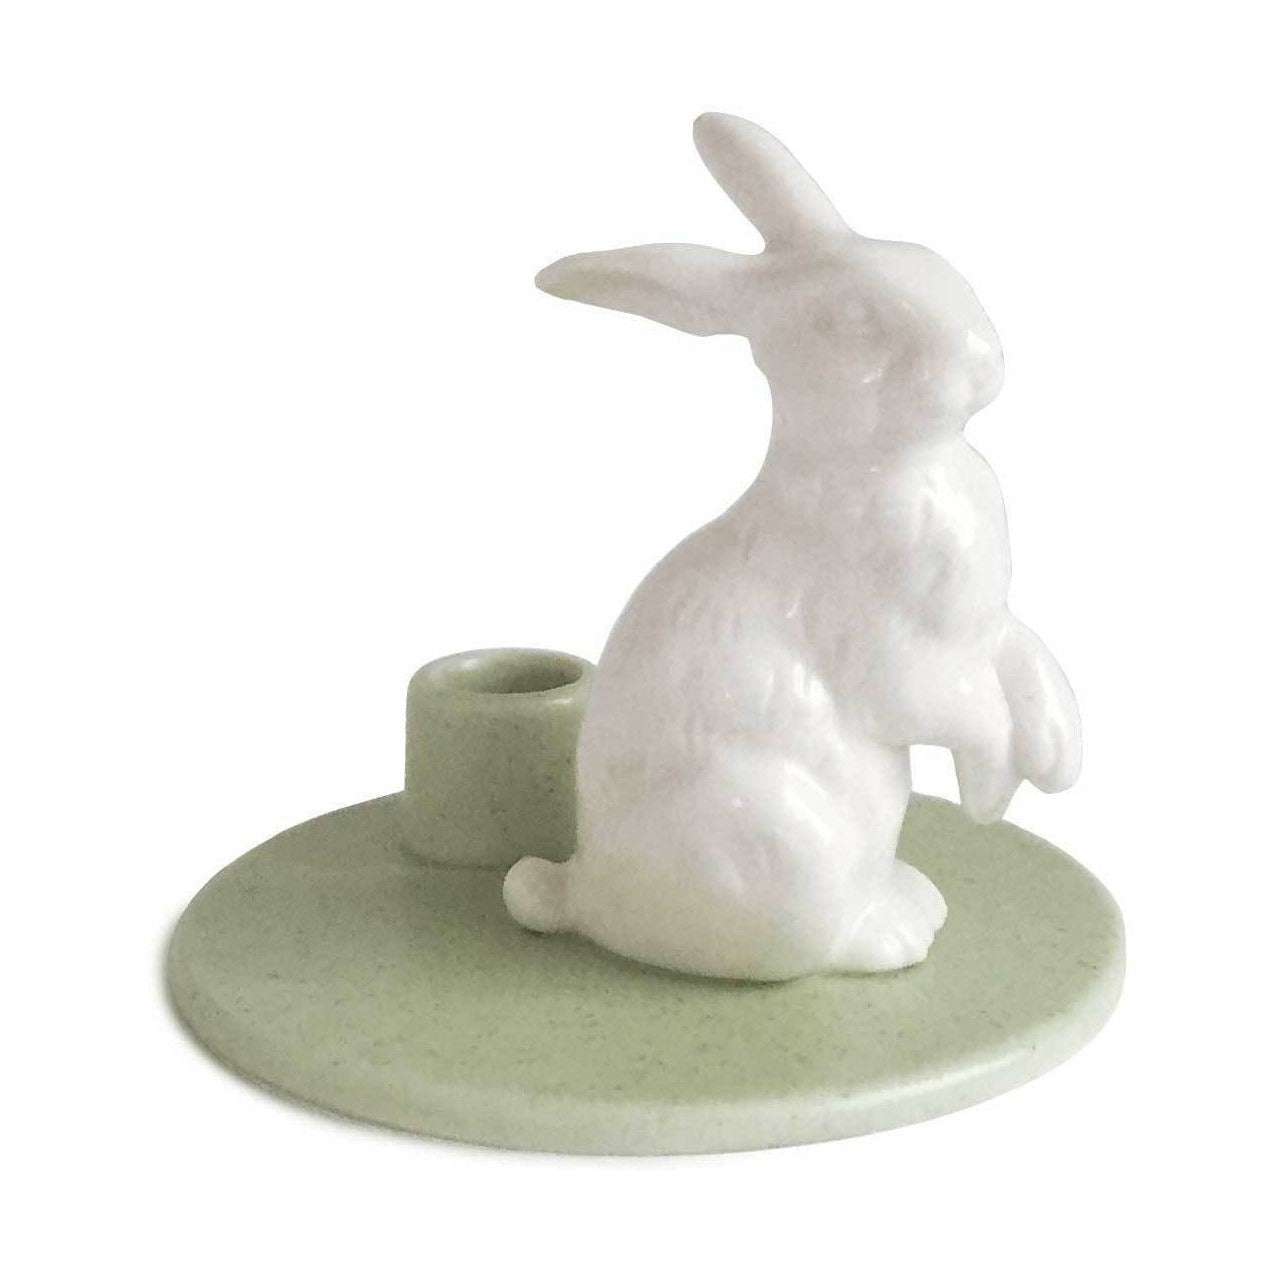 Dottir bursdagshistorier Rabbit Green, 8cm